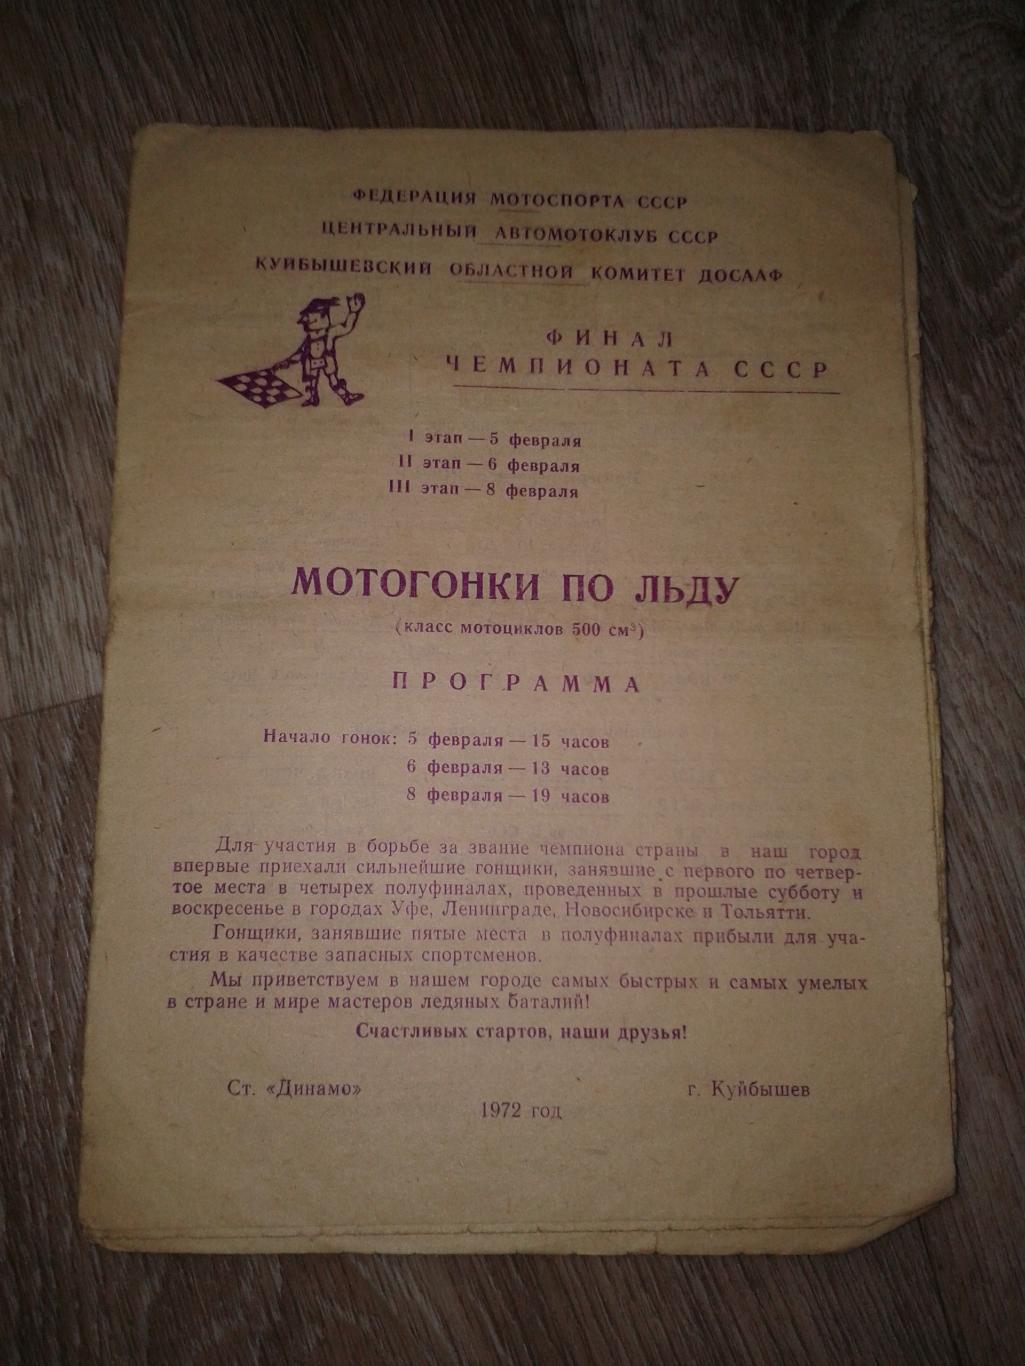 1966 Мотоспорт.Мотогонки по льду Куйбышев финал чемпионата СССР